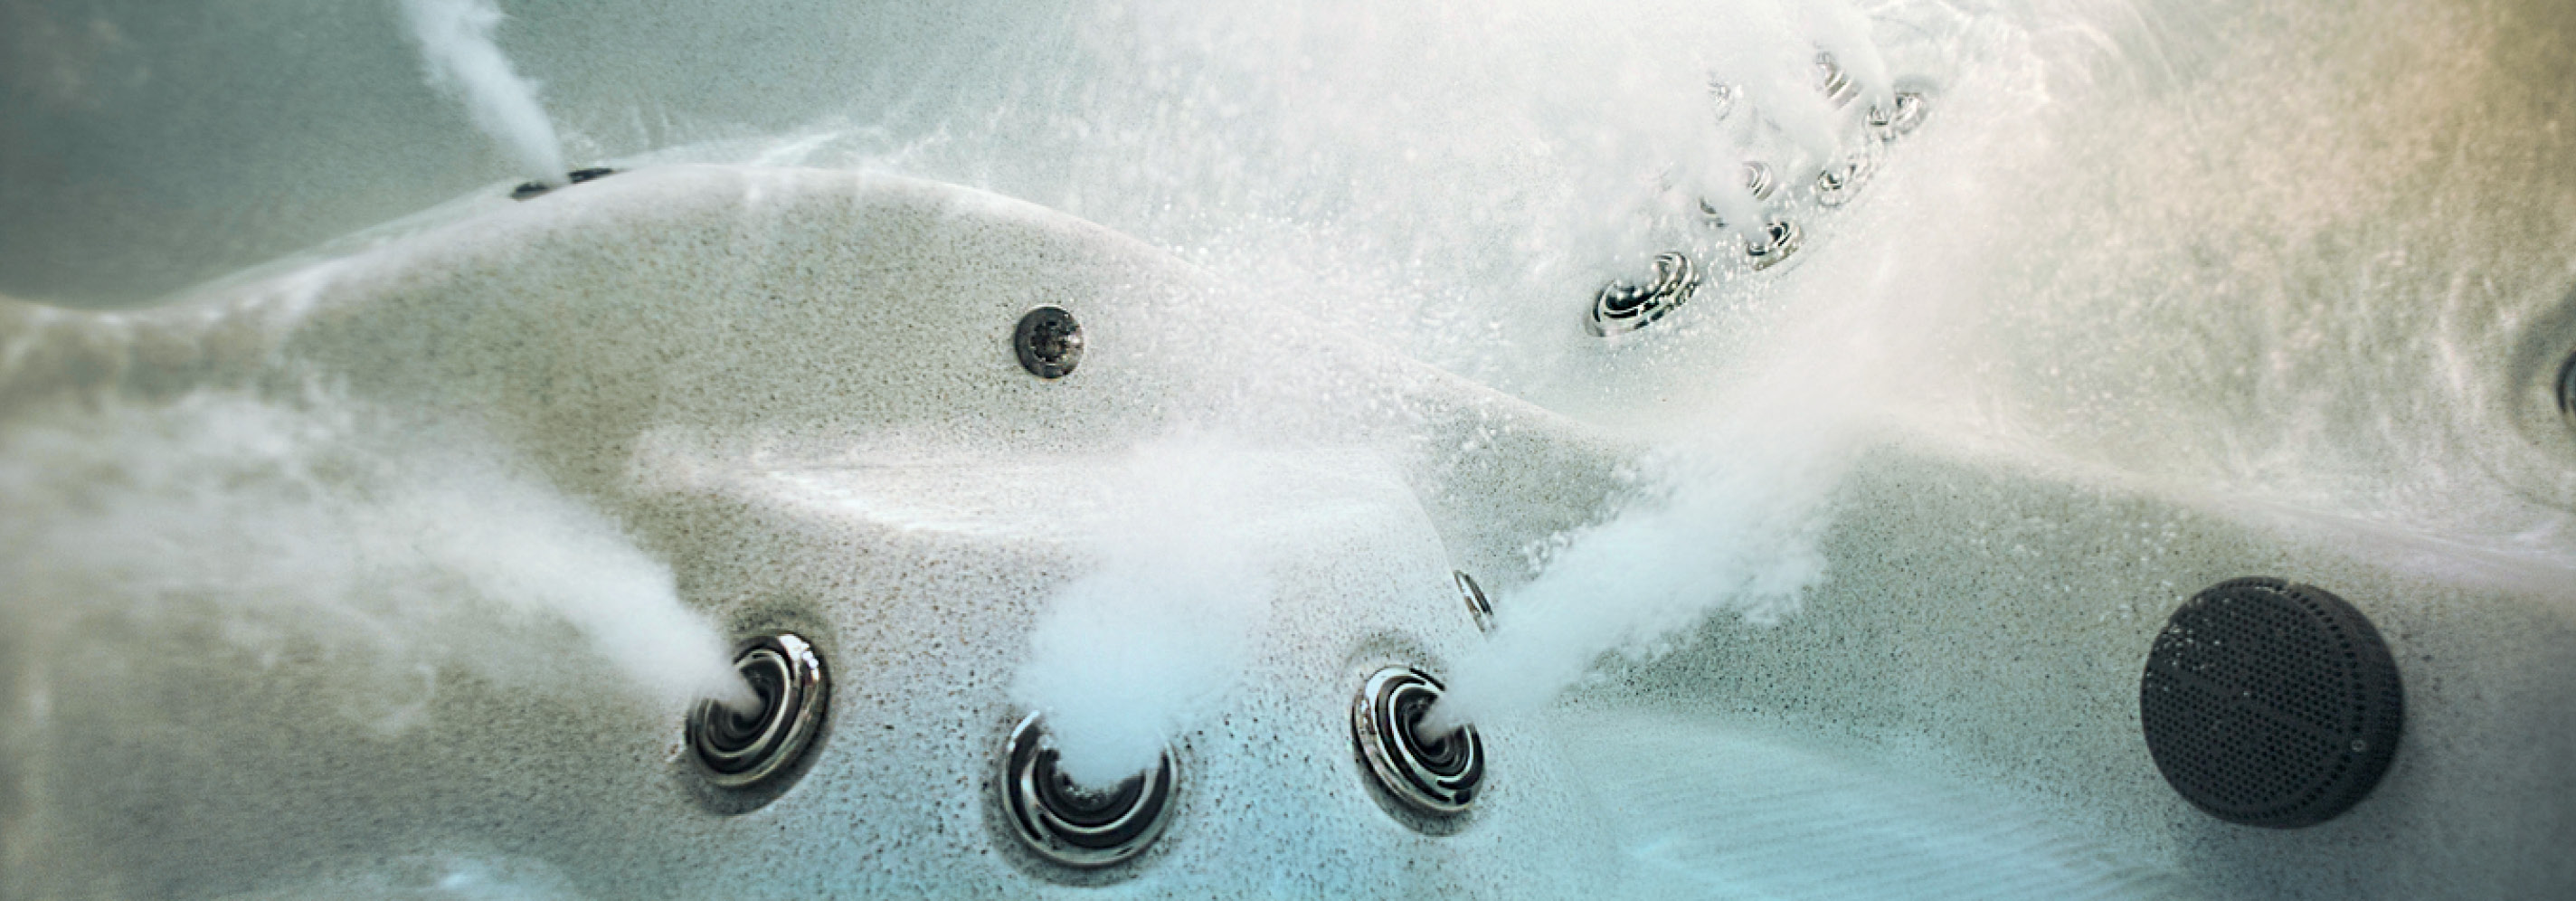 imagen subacuática de los chorros de un jacuzzi